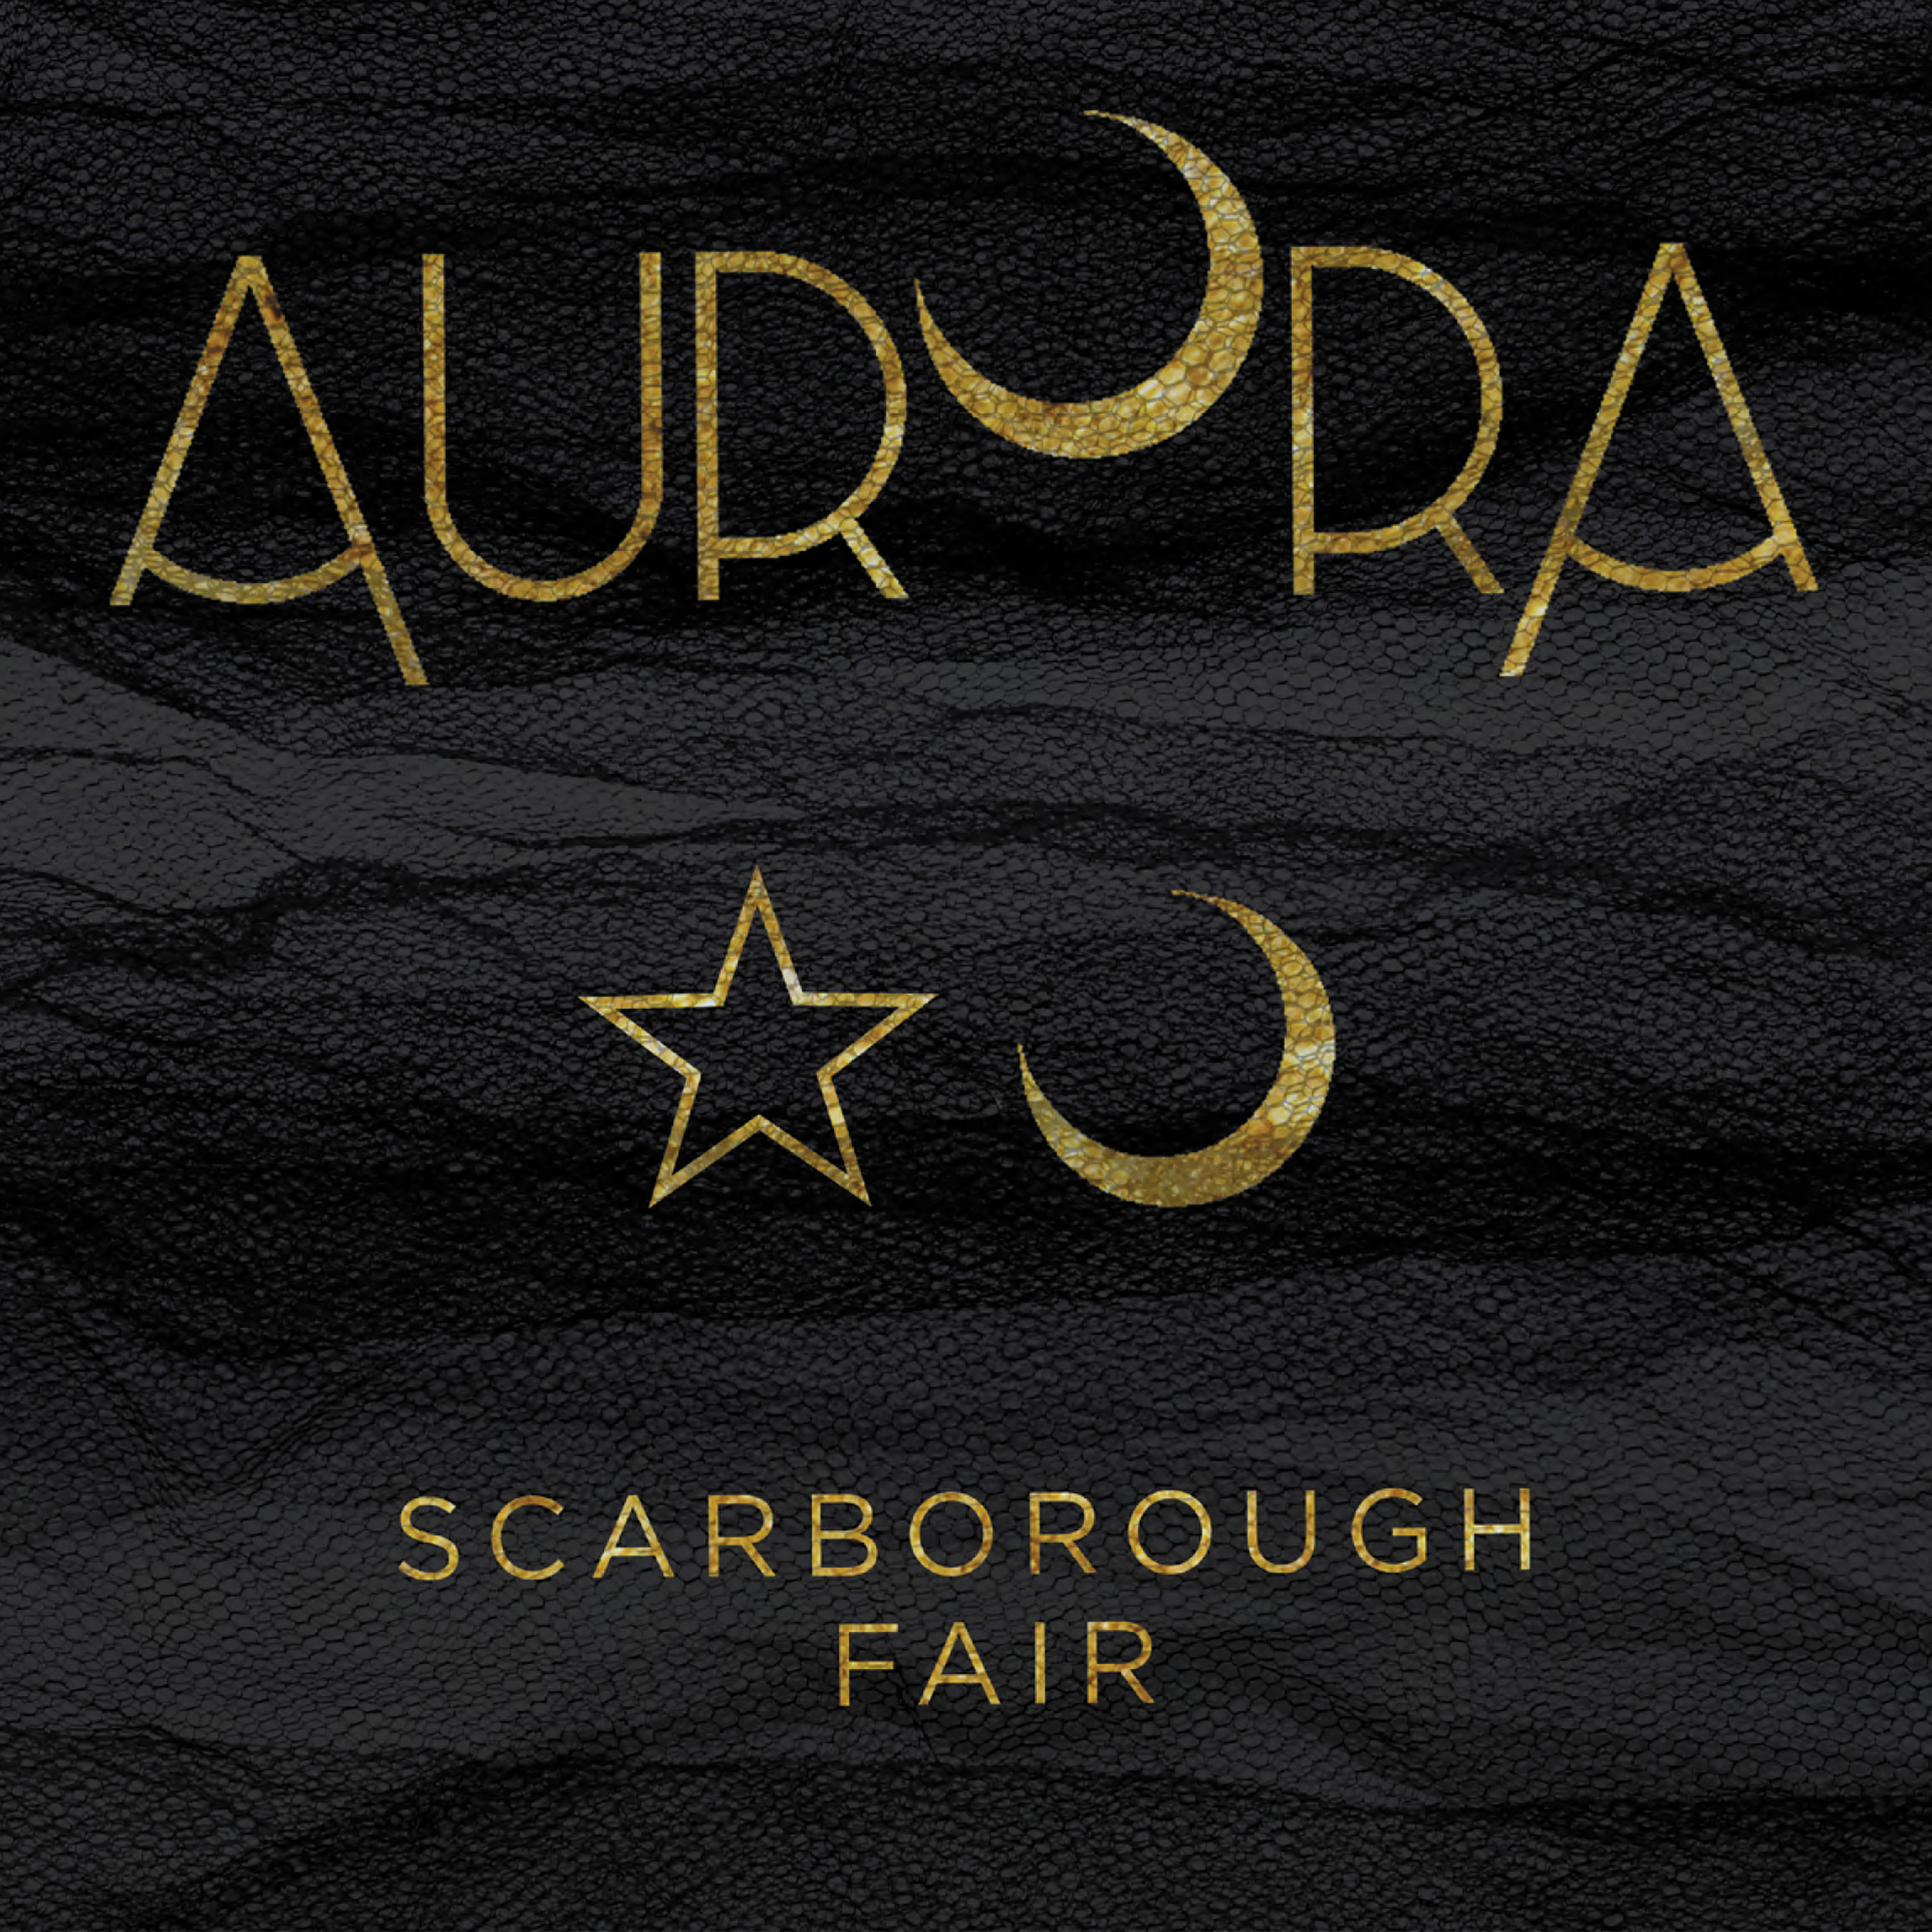 Aurora 💘 Scarborough Fair (Tradução) - ♥♪♫♥ Suspiros ♥ Poéticos ♥♫♪♥ / Eu  amo Música ಌ, Aurora 💘 Scarborough Fair (Tradução) - ♥♪♫♥ Suspiros ♥  Poéticos ♥♫♪♥ / Eu amo Música ಌ, By Eu amo Música ಌ